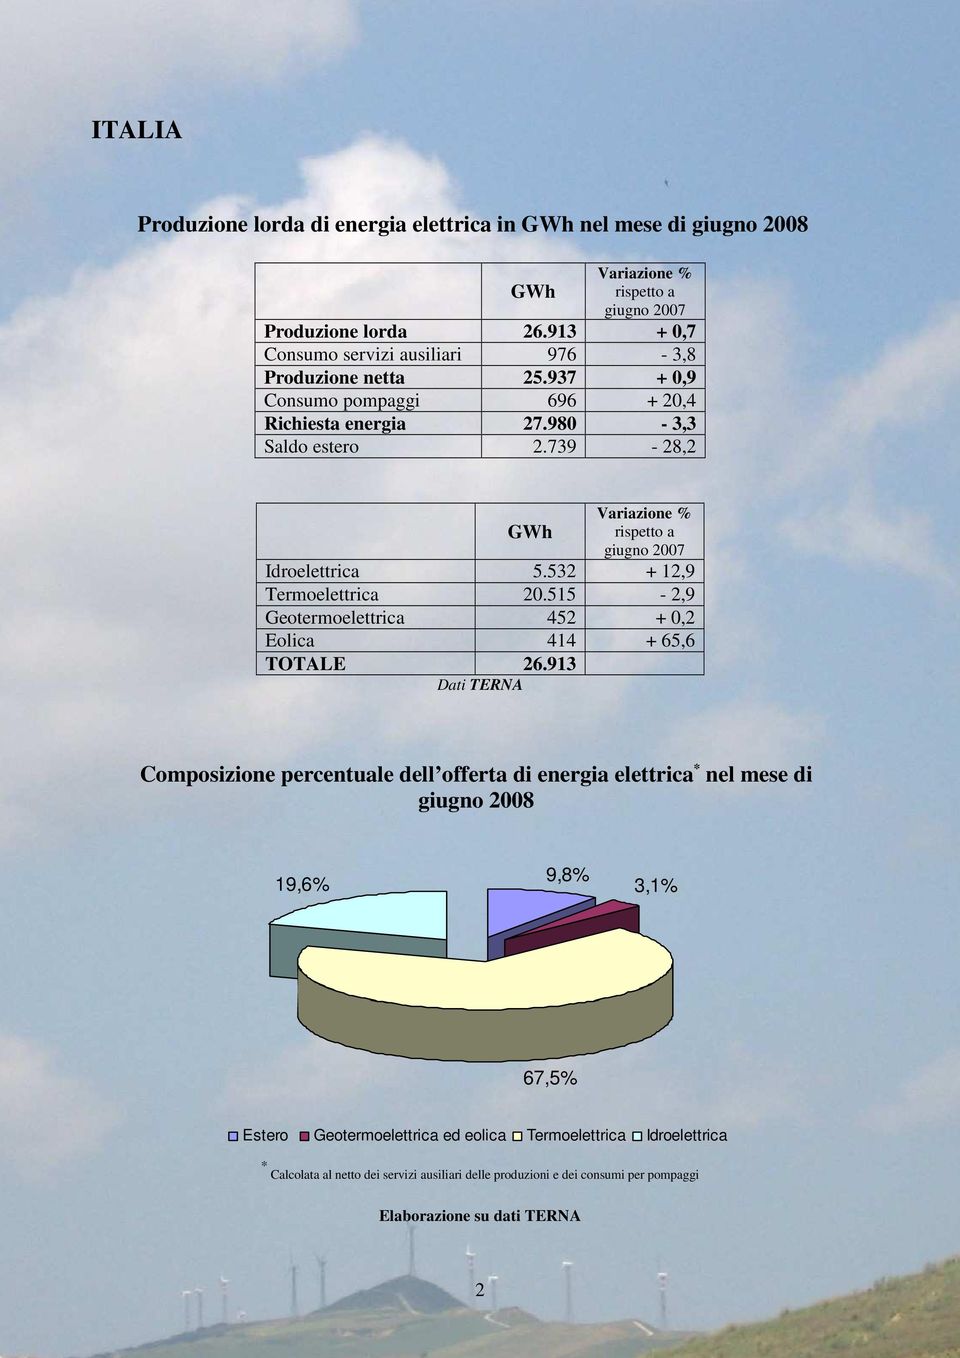 739-28,2 GWh Variazione % rispetto a giugno 2007 Idroelettrica 5.532 + 12,9 Termoelettrica 20.515-2,9 Geotermoelettrica 452 + 0,2 Eolica 414 + 65,6 TOTALE 26.